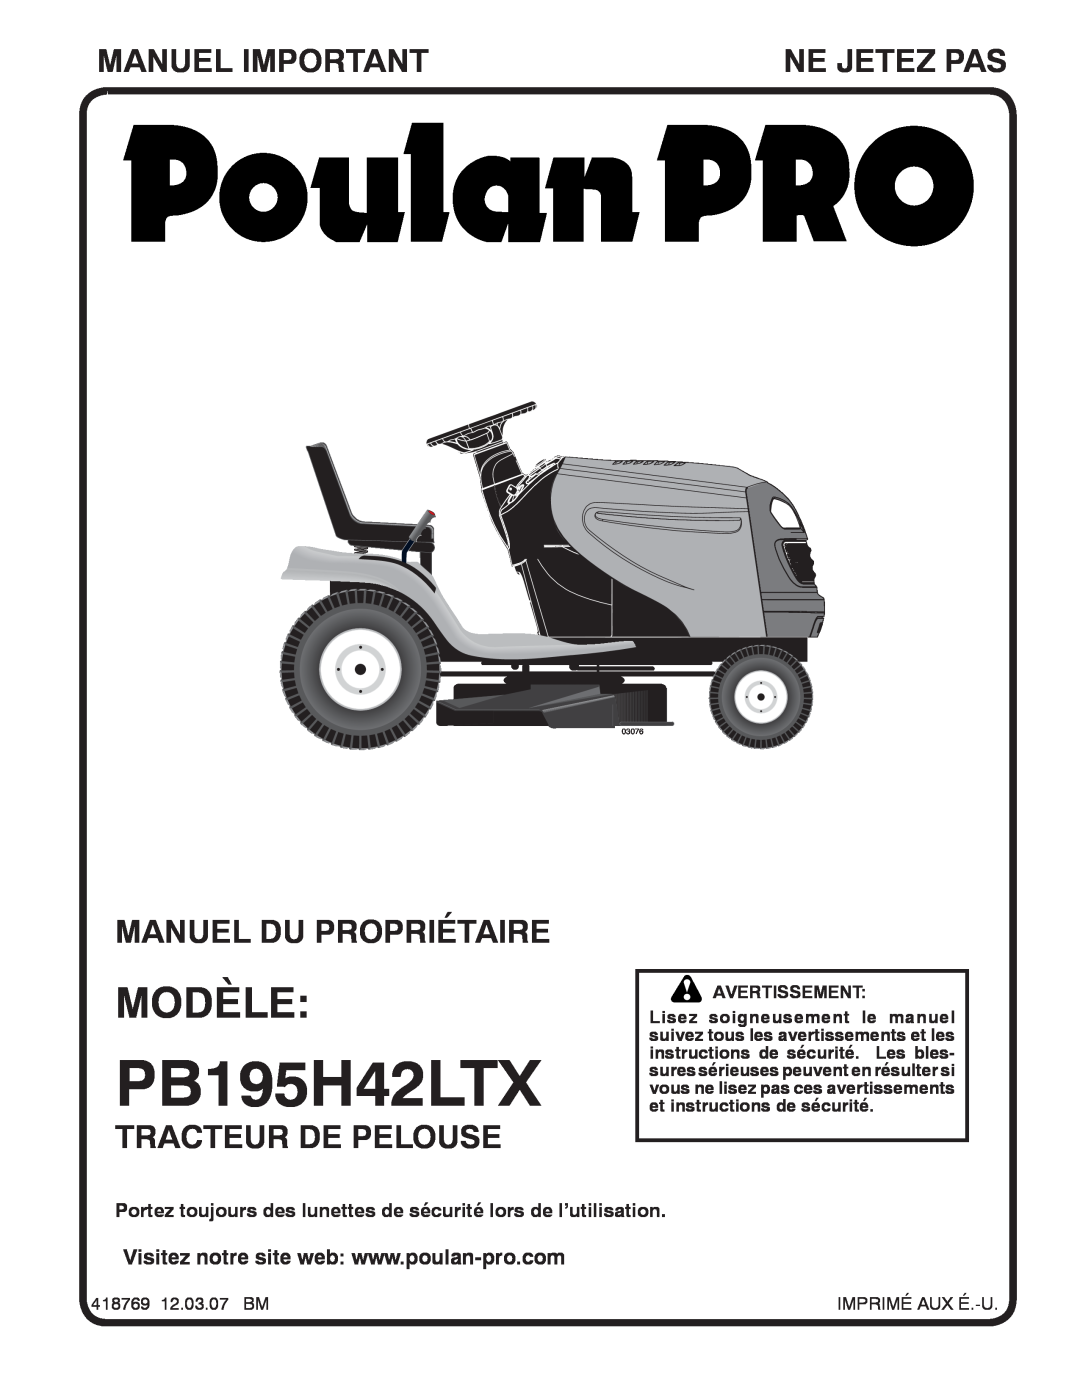 Poulan 96042004700 manual Modèle, Manuel Important, Manuel Du Propriétaire, Tracteur De Pelouse, Ne Jetez Pas, PB195H42LTX 